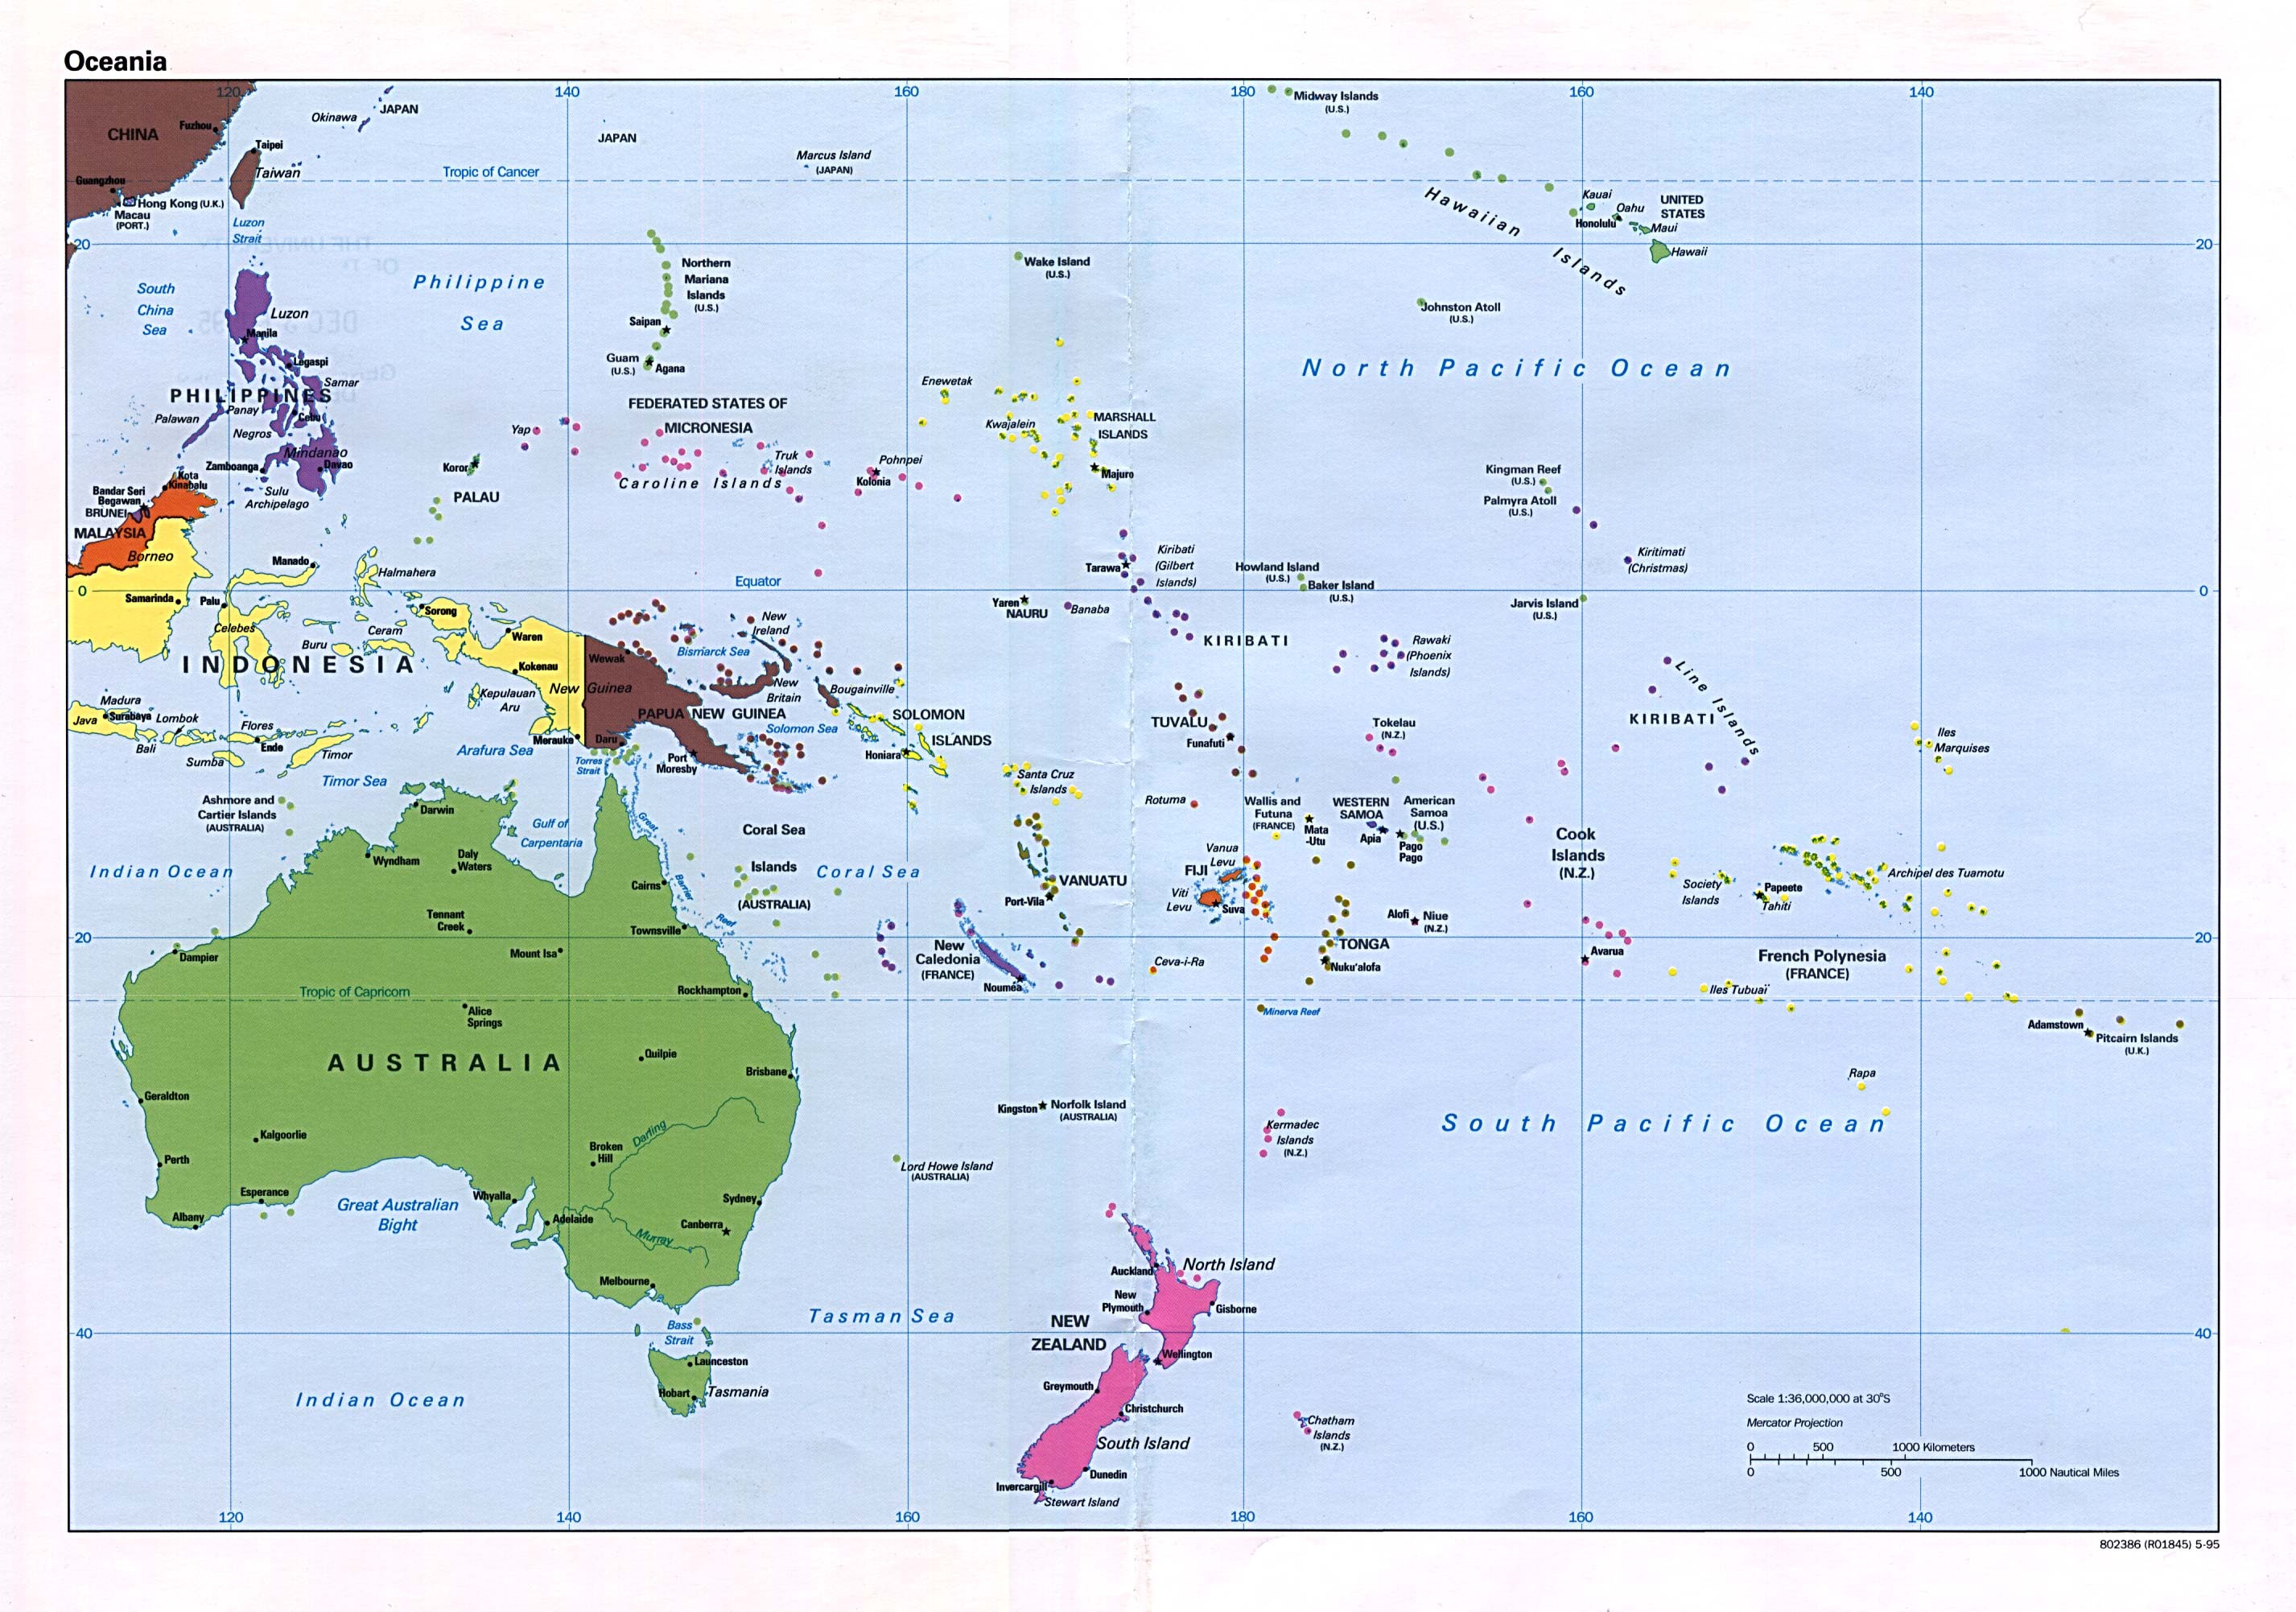 Mapa Politico de Oceanía 1995